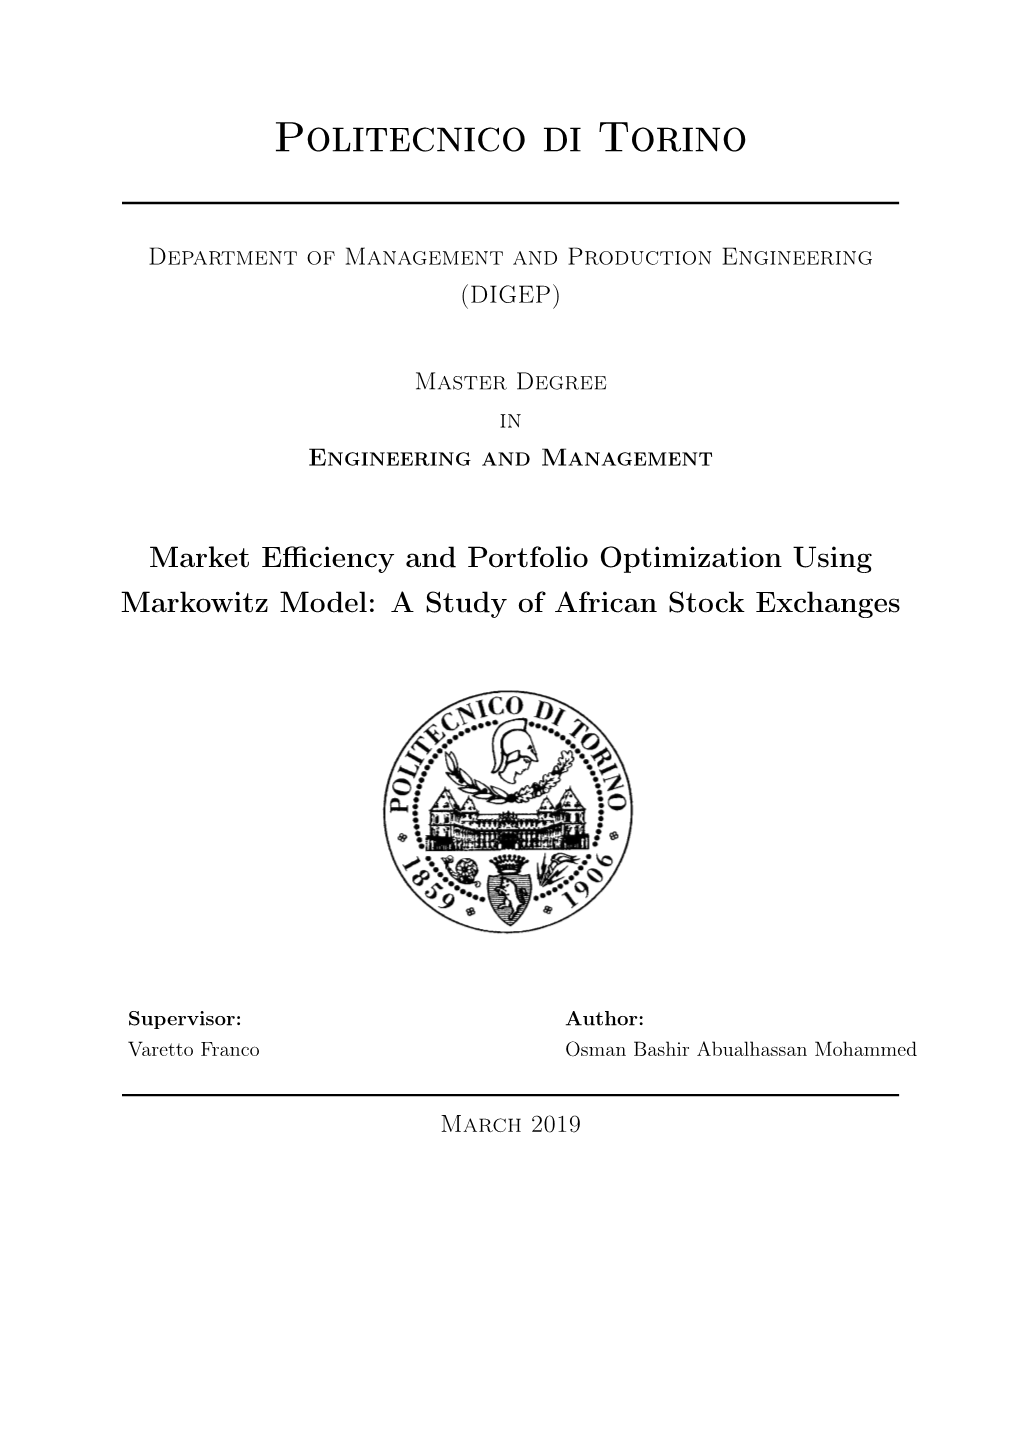 Market Efficiency and Portfolio Optimization Using Markowitz Model